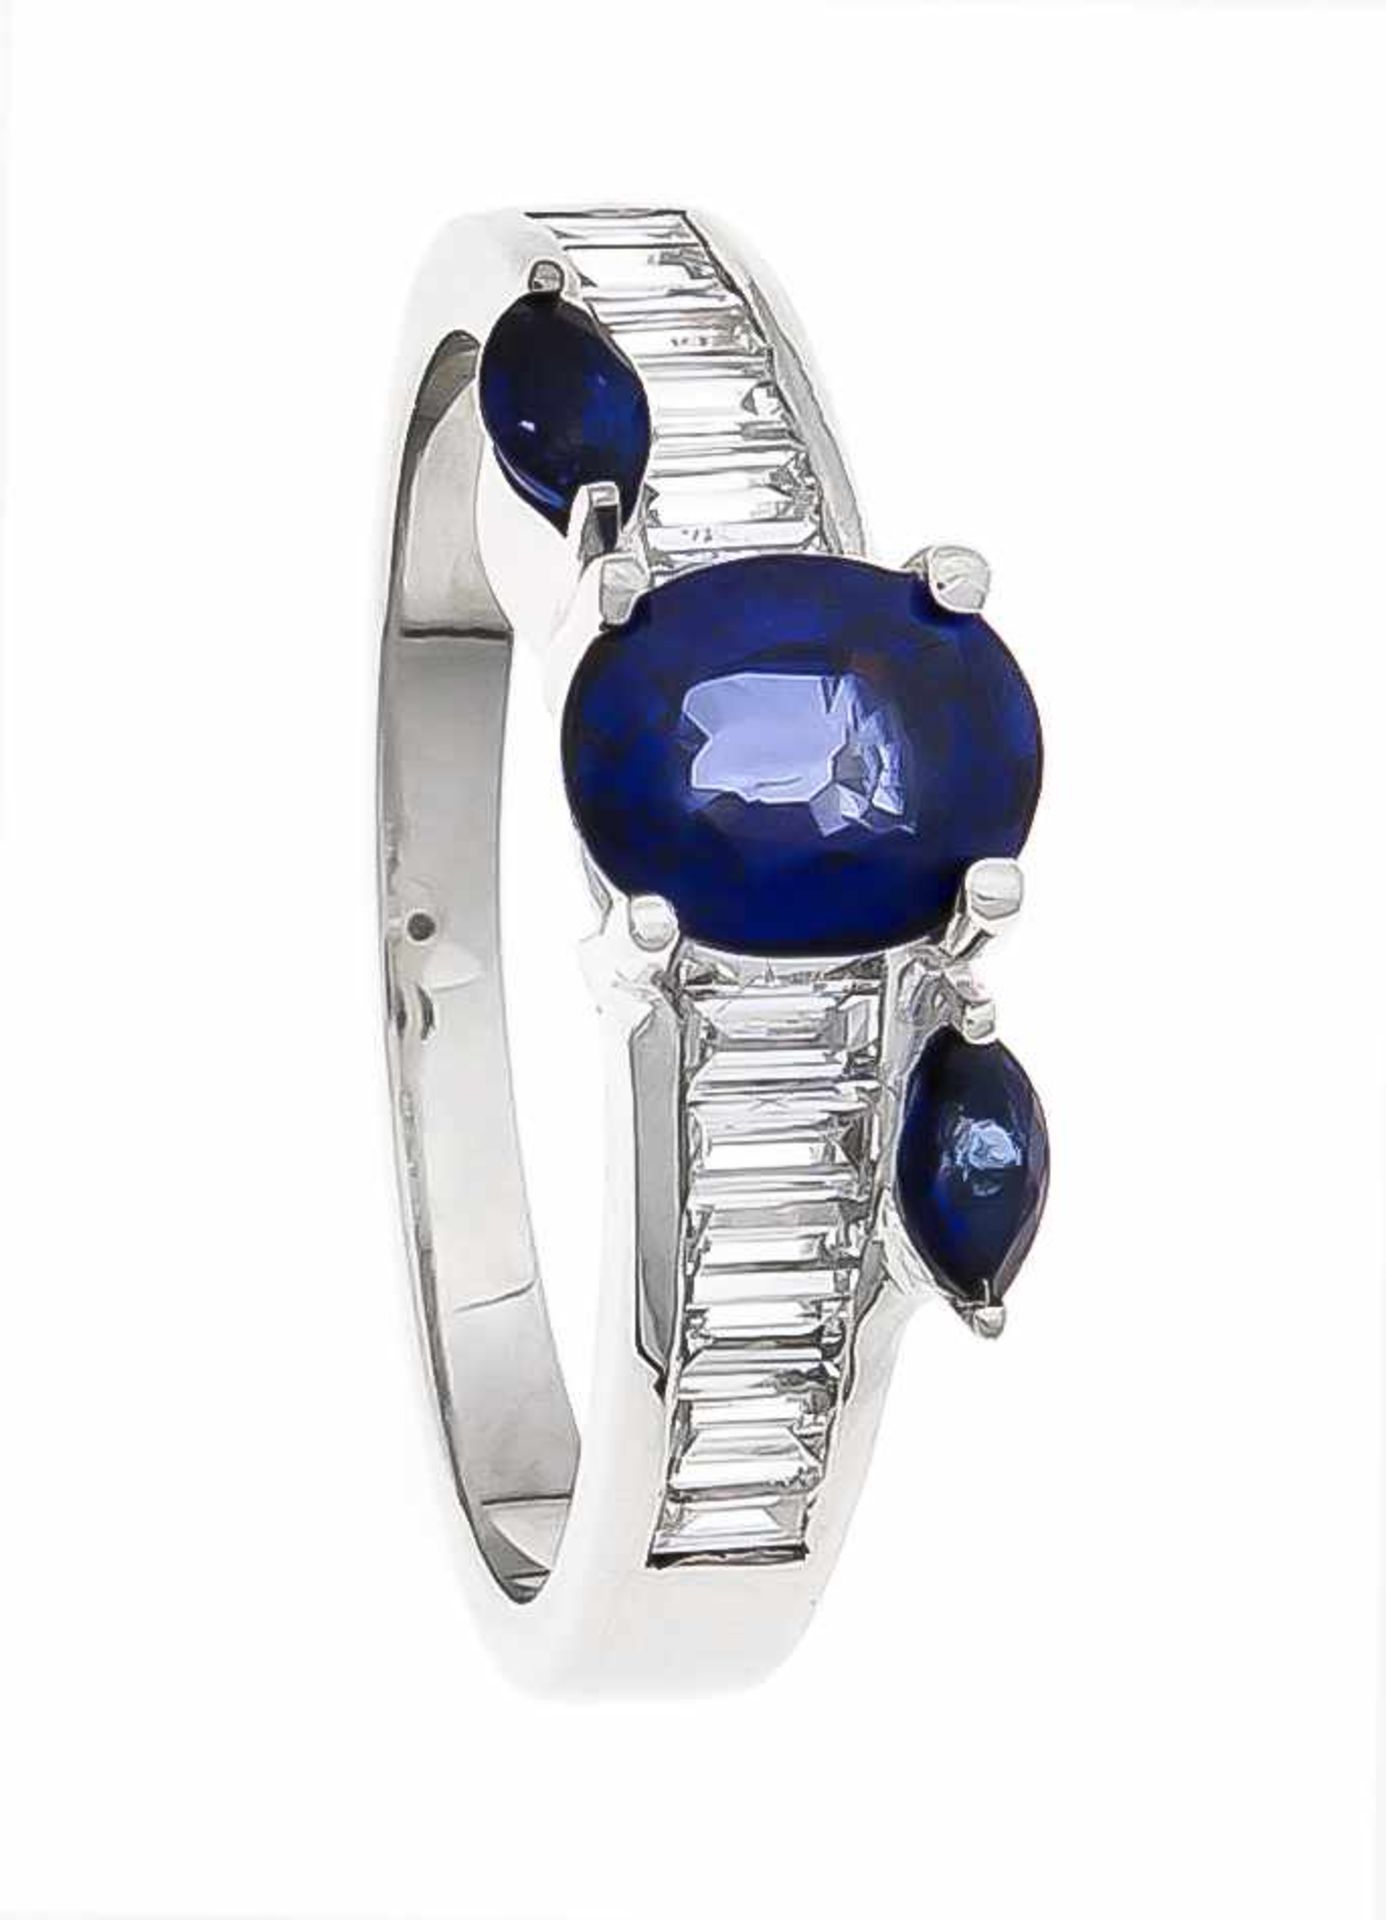 Saphir-Brillant-Ring WG 750/000 mit einem oval fac. Saphir 6,5 x 5 mm in excellenter Farbe, 2 fac.